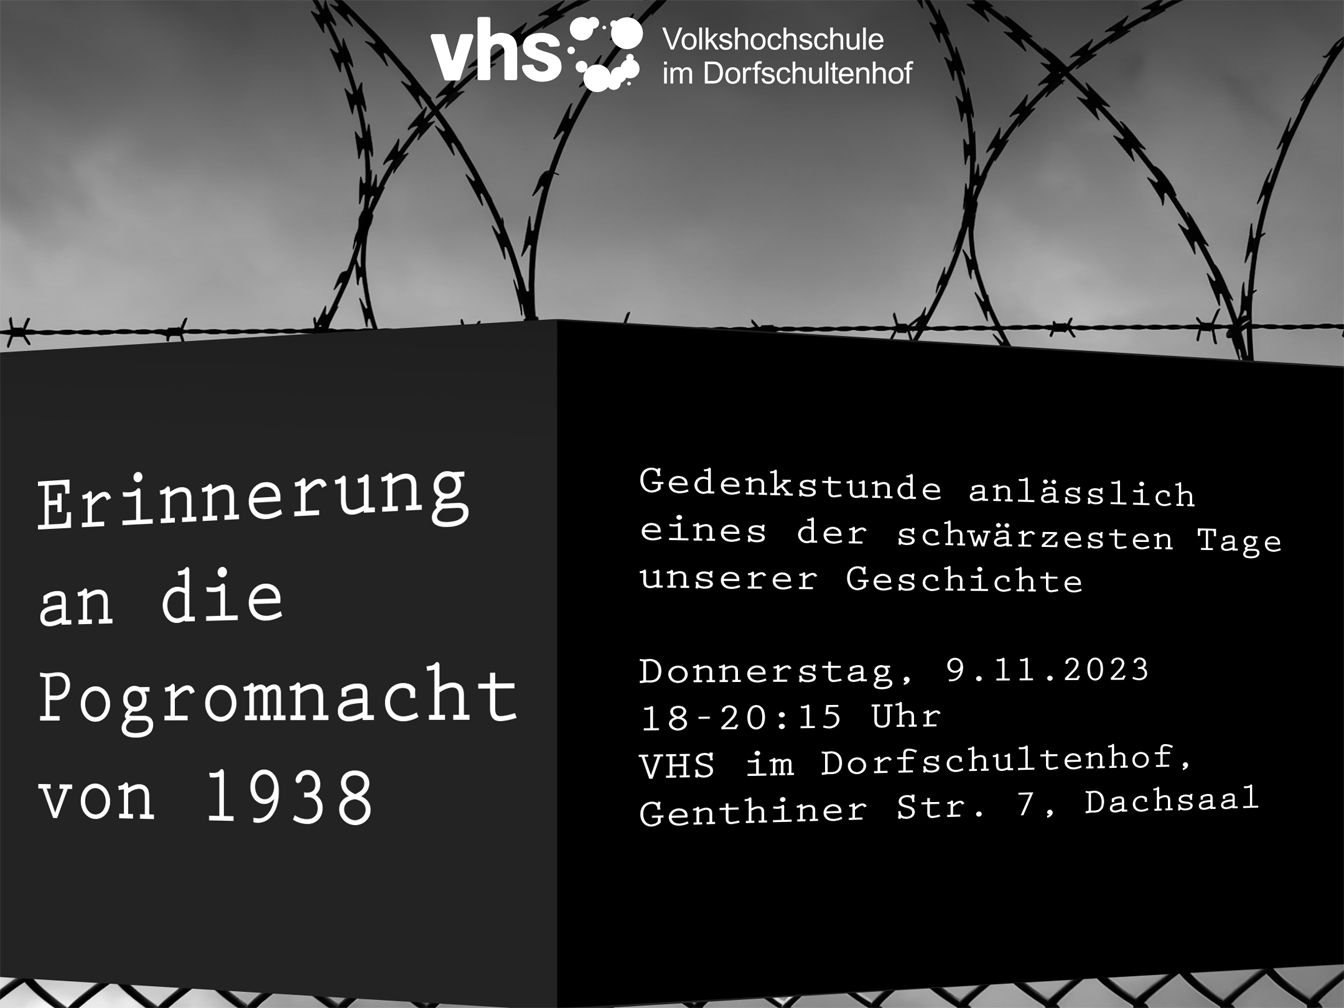 Stacheldraht und ein Zaun, das Bild ist sehr dunkel gehalten, außerdem Text "Erinnerung an die Pogromnach von 1938" sowie Infos zur Veranstaltung